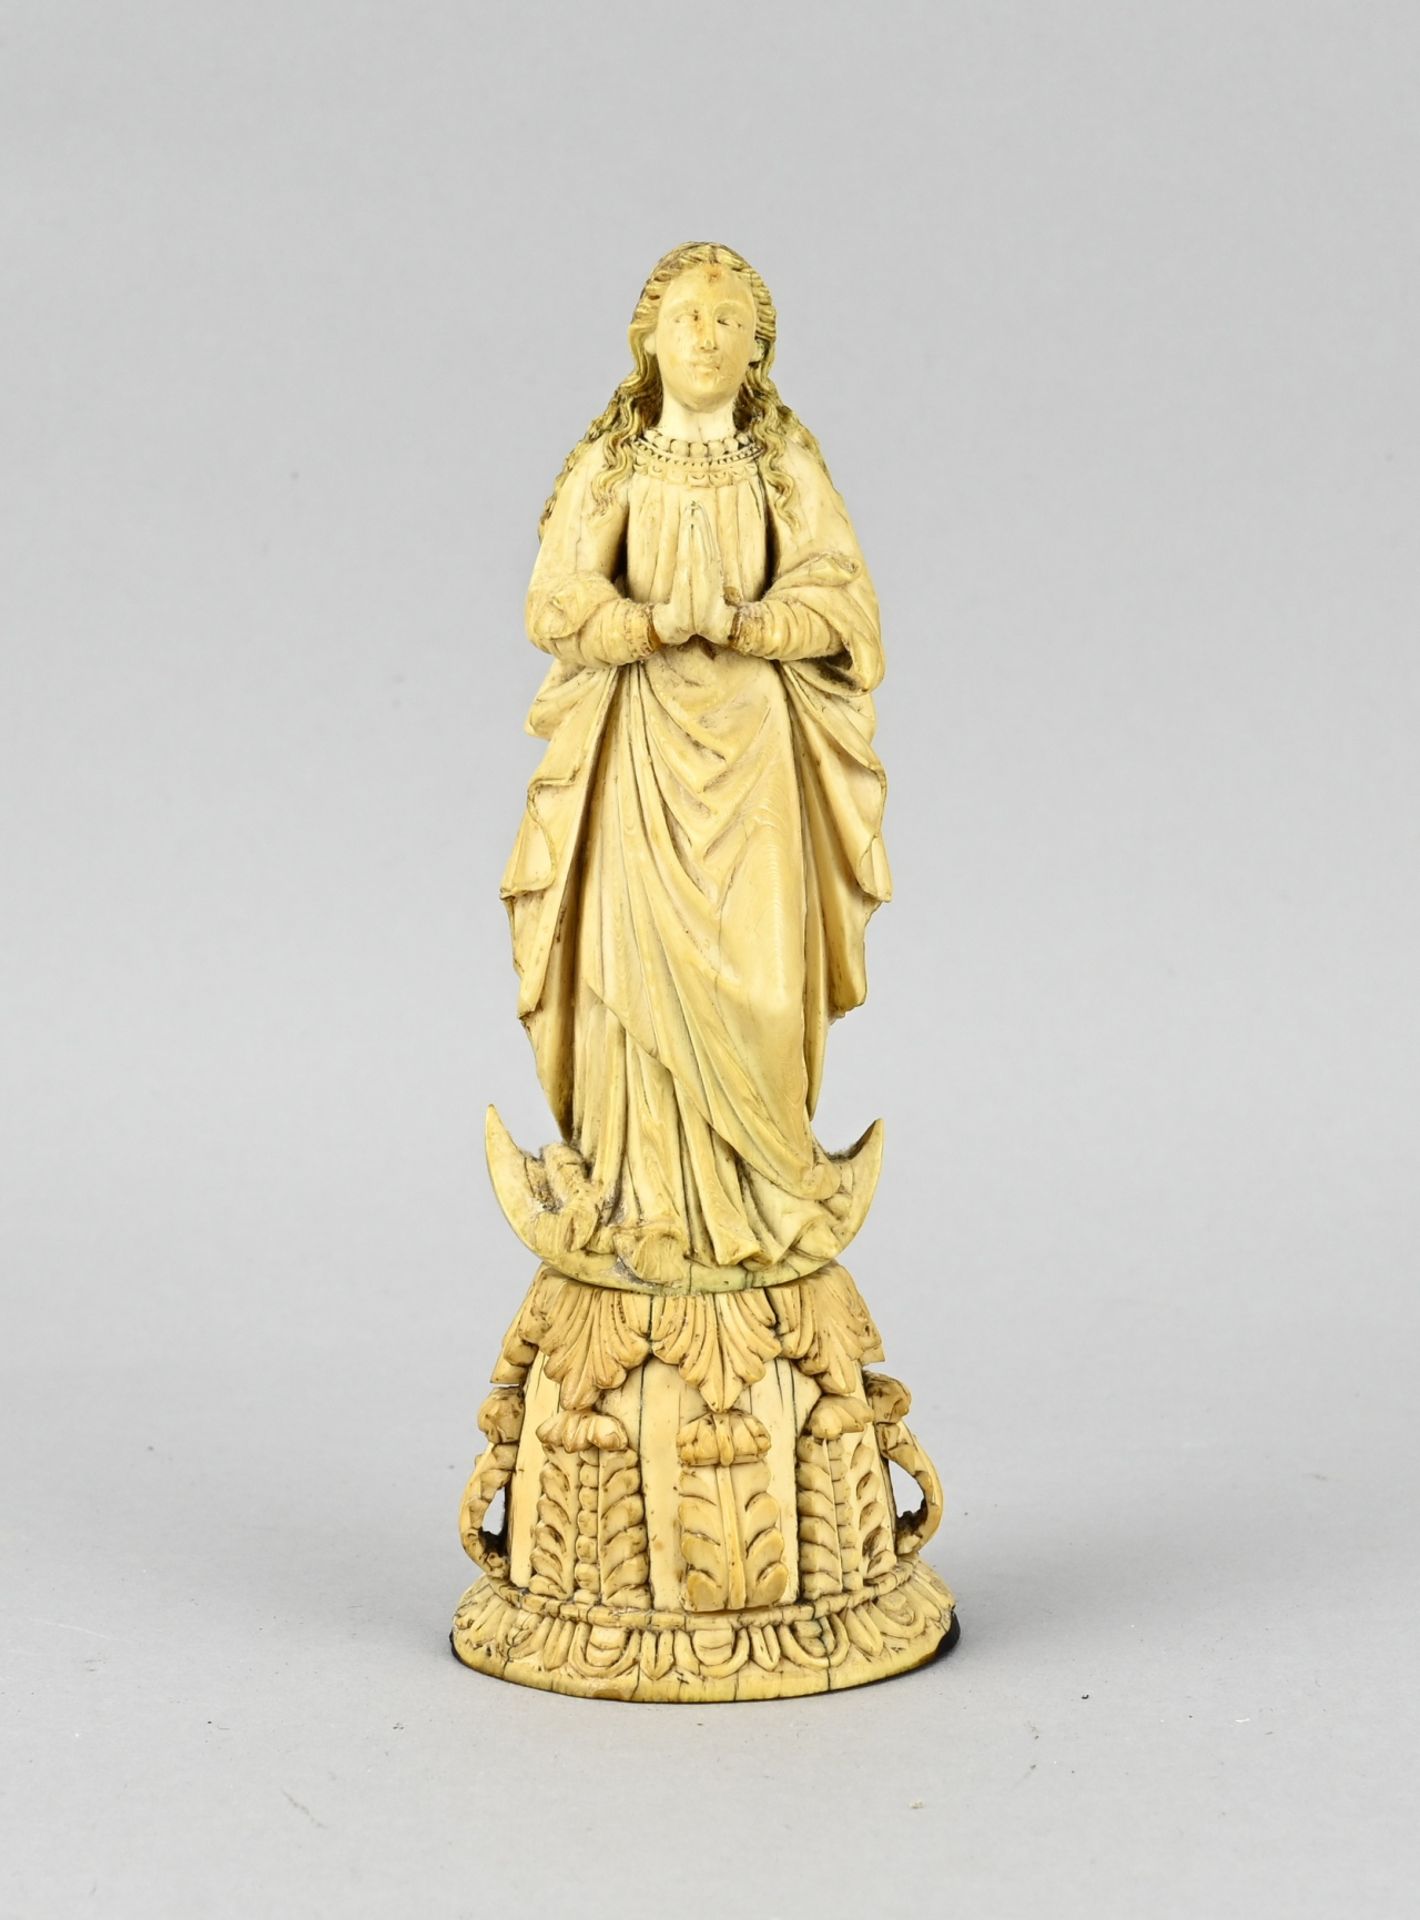 Antique religious Madonna statue